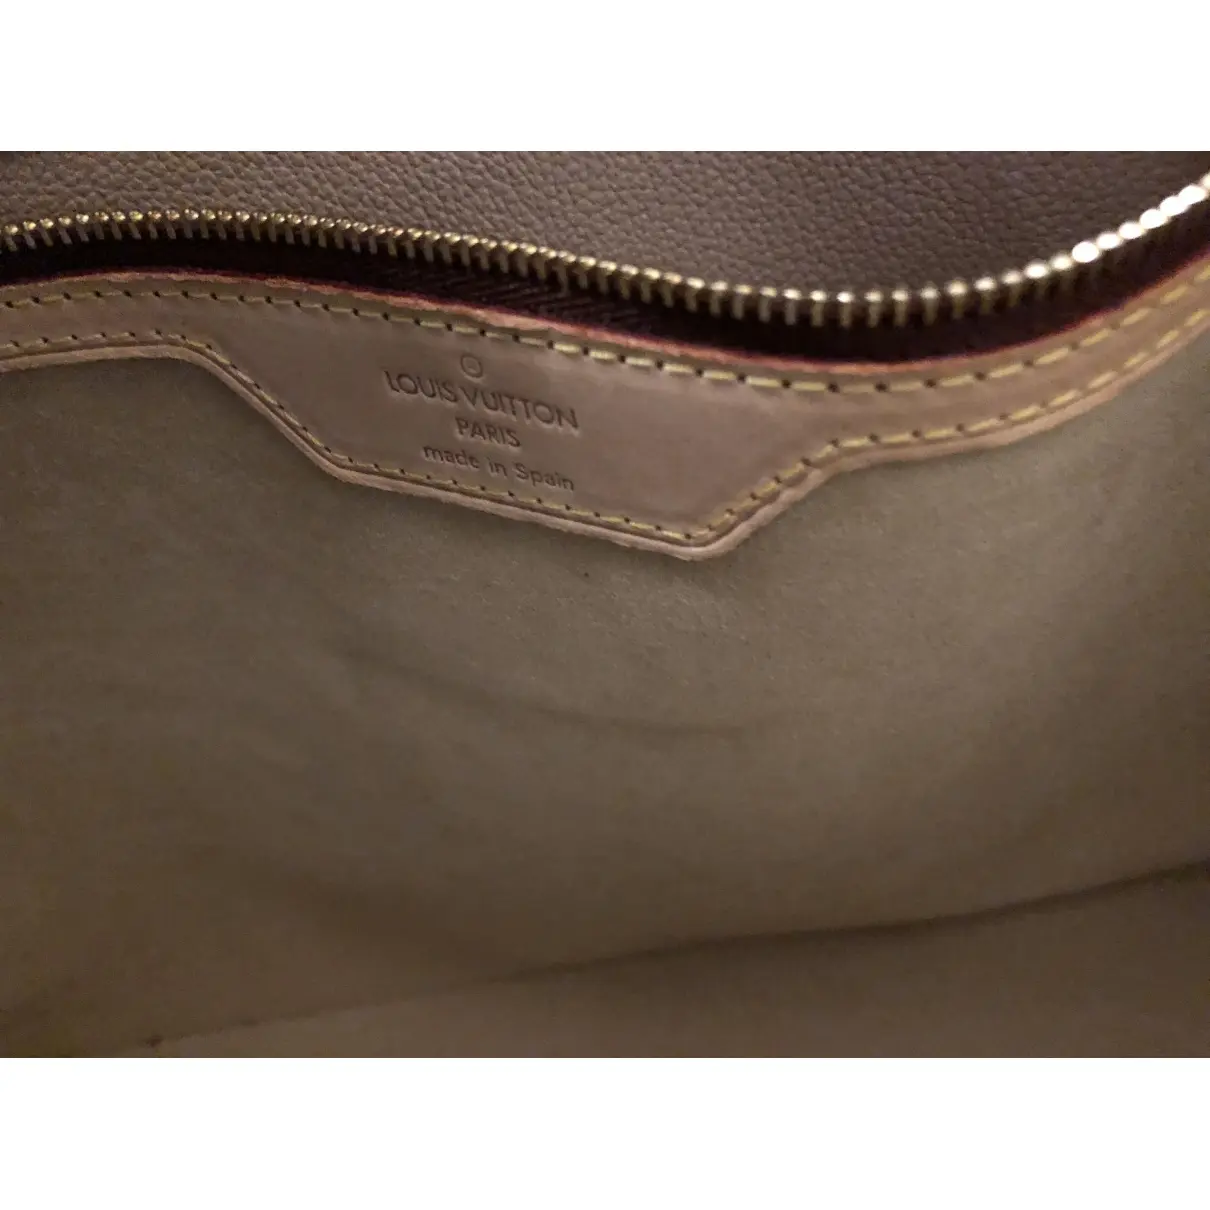 Buy Louis Vuitton Piano cloth handbag online